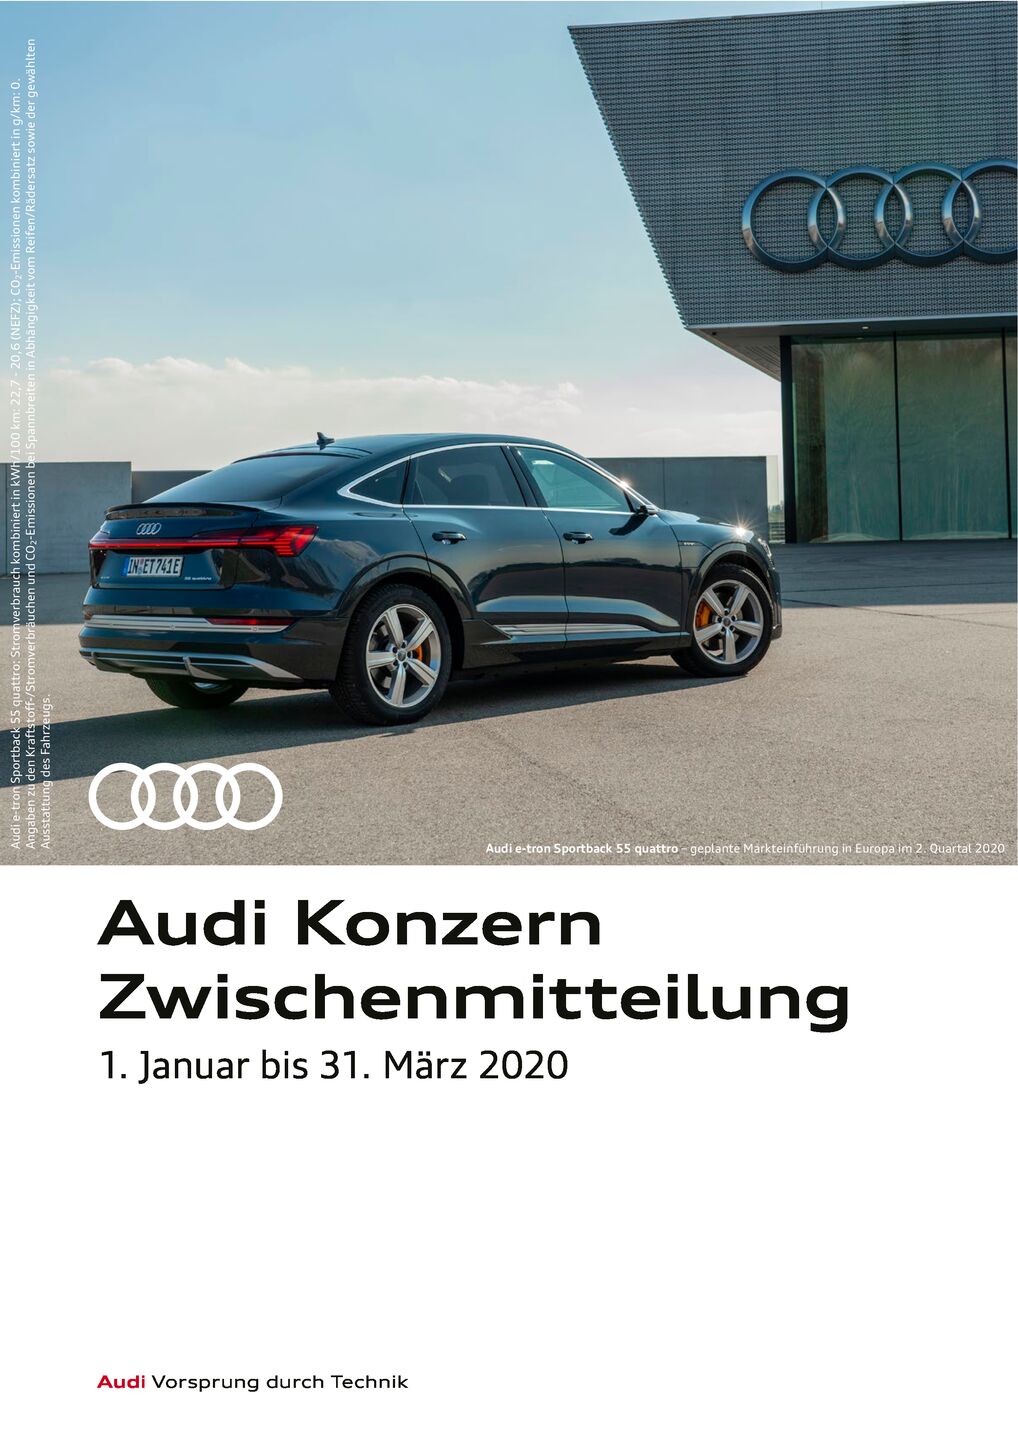 Audi Konzern Zwischenmitteilung, 1. Januar bis 31. März 2020